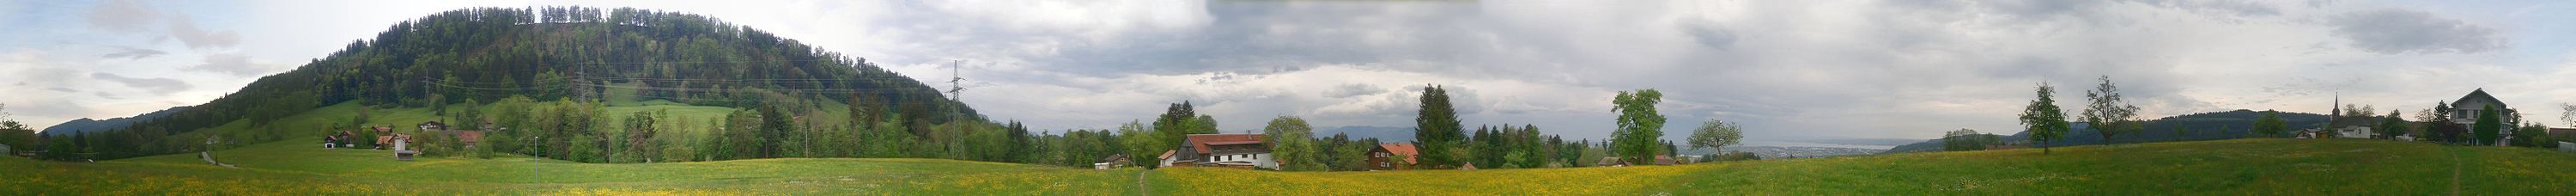 360° Panorama einiger Haselstauder Begparzellen. Von links nach rechts: Hauat, Heilgereuthe, Jennen. In der rechten Hälfte ist am Horizont der Bodensee zu erkennen. Das Bild wurde in einer Höhe von 664 Metern aufgenommen.